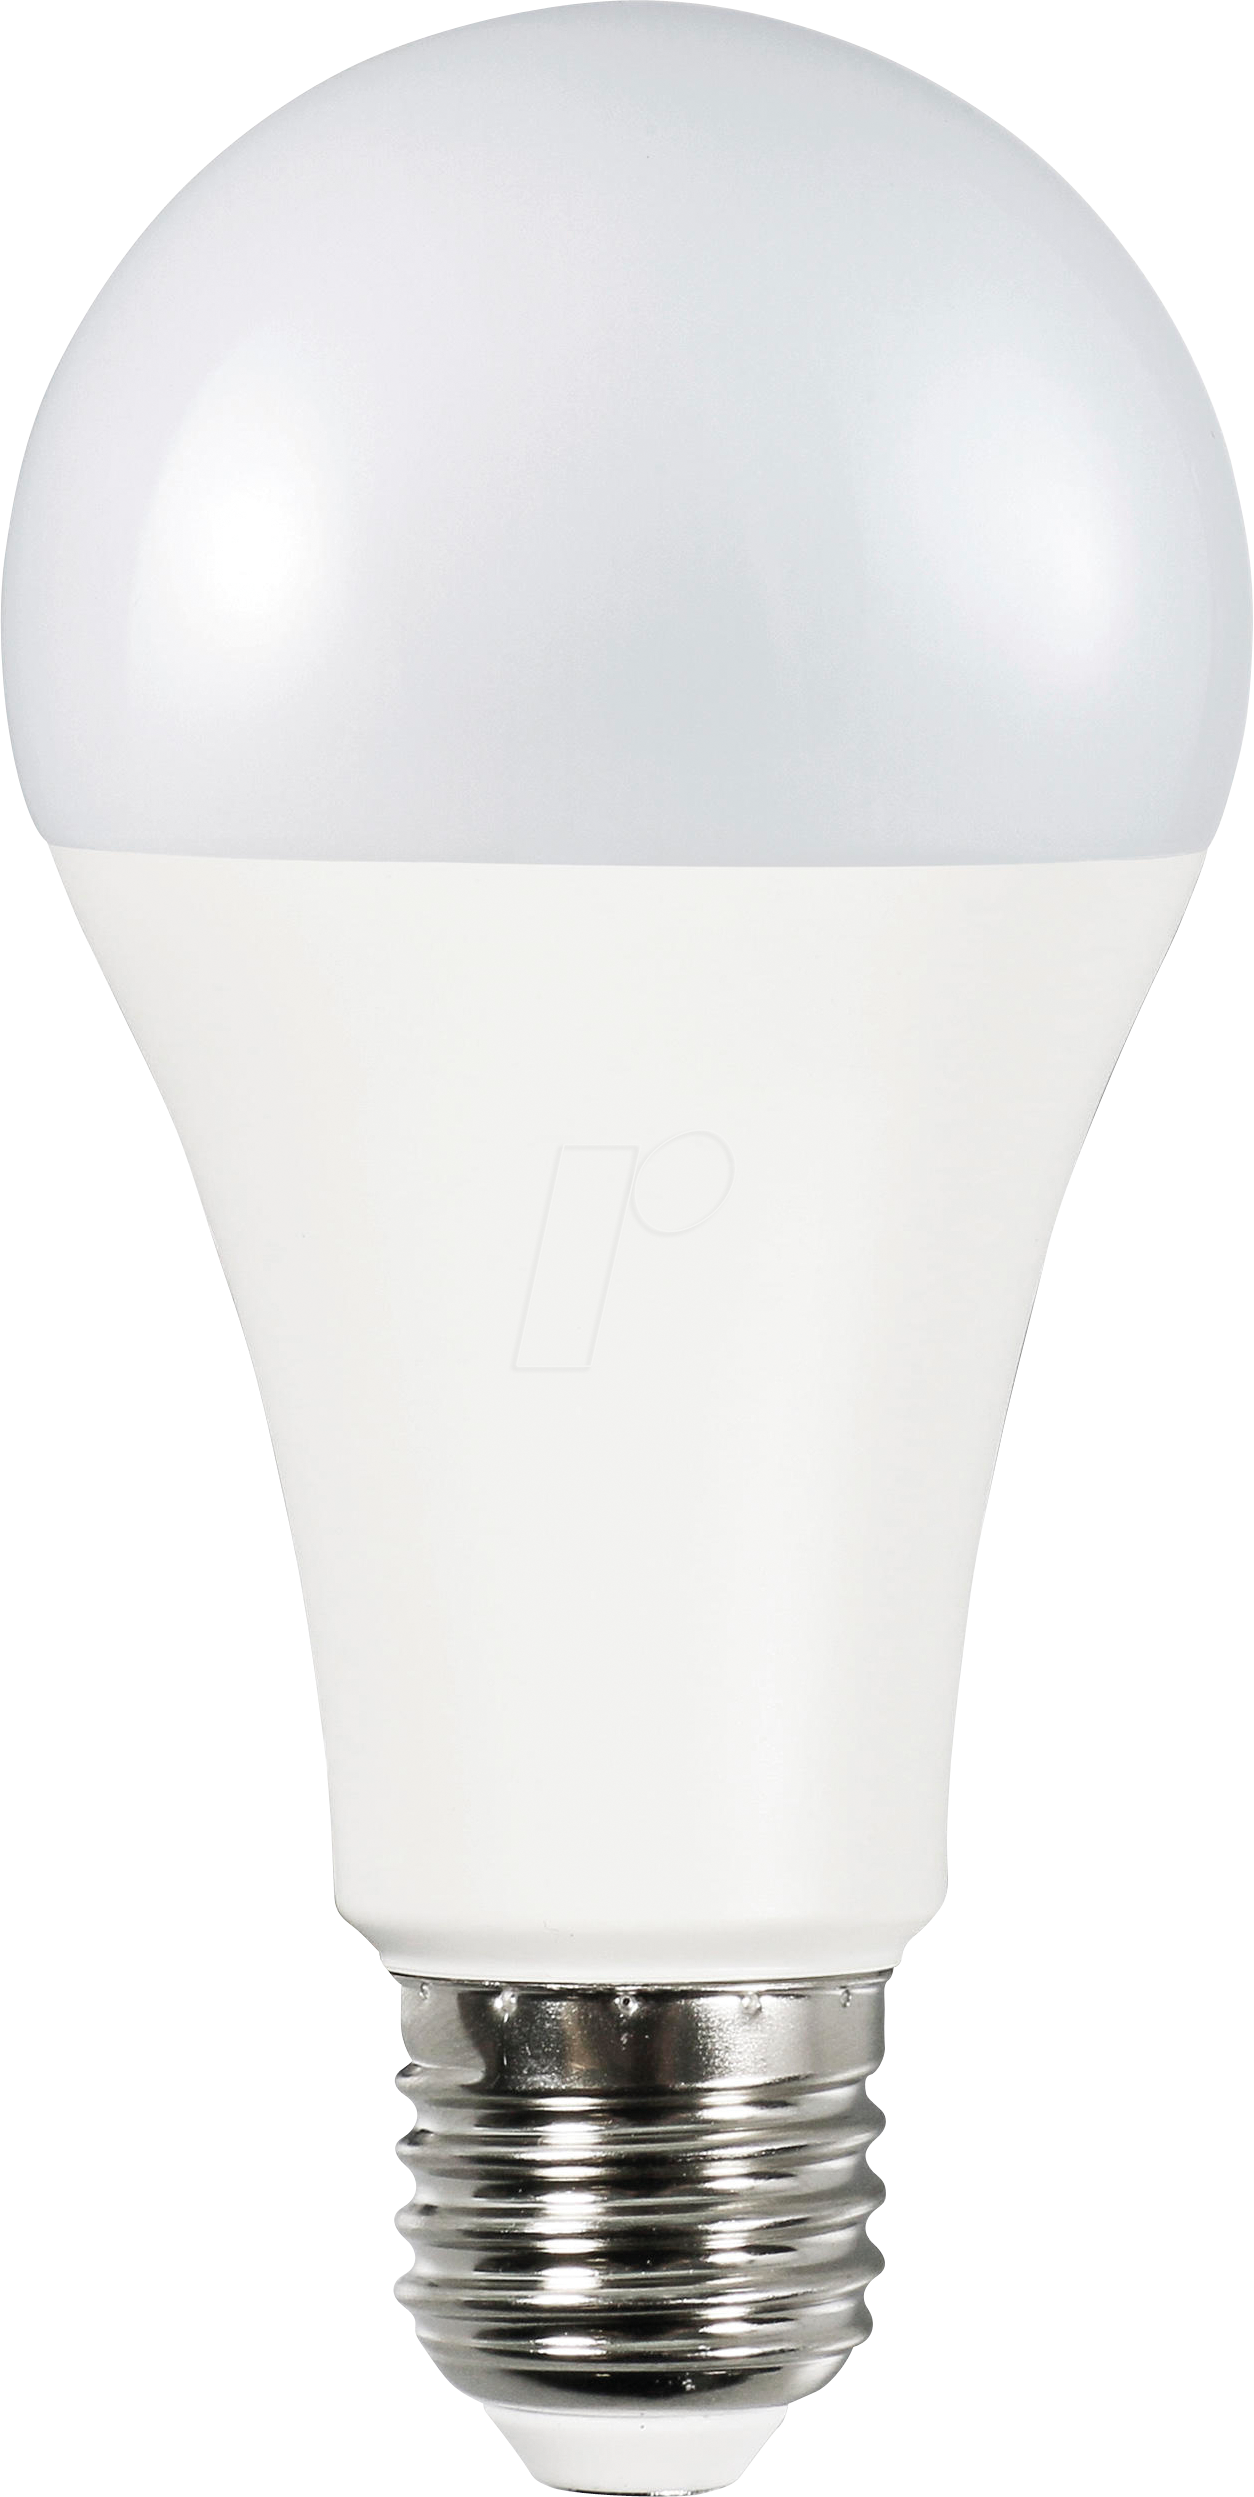 MLI 401007 - LED-Lampe E27, 15 W, 1520 lm, 2700 K von Müller Licht